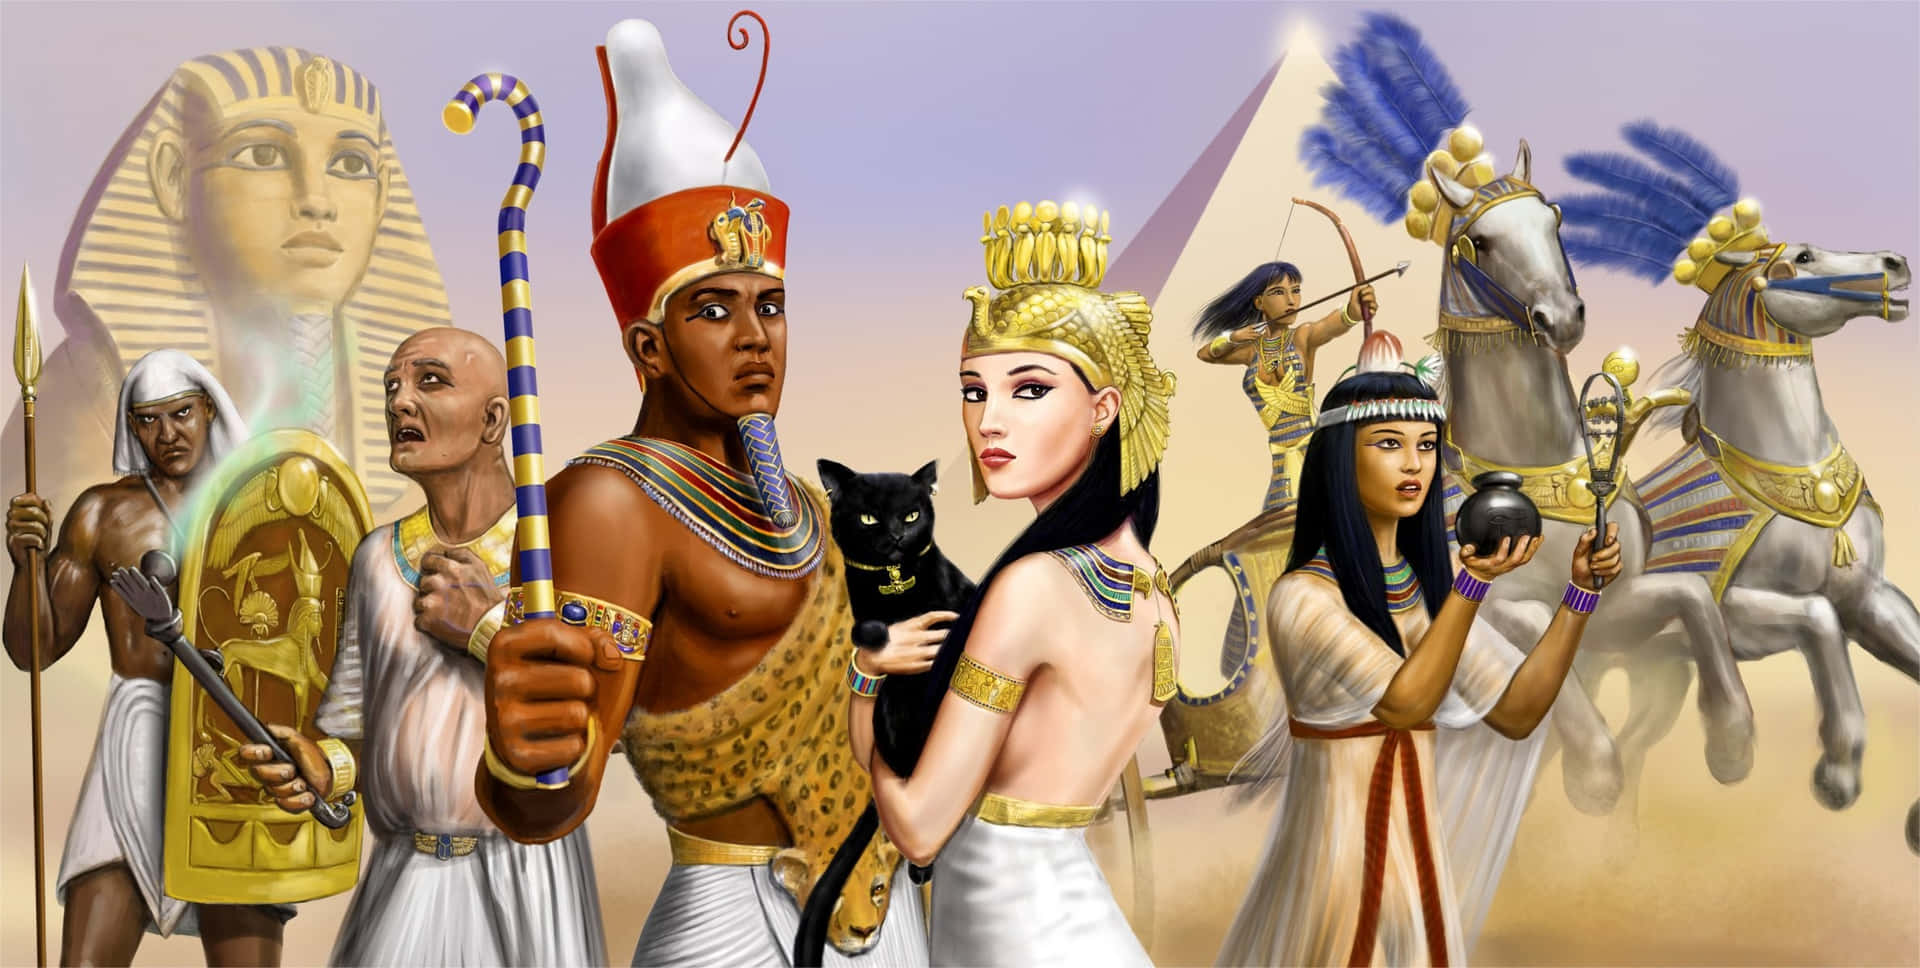 Imagende Gatos Faraones Egipcios Y Pirámides